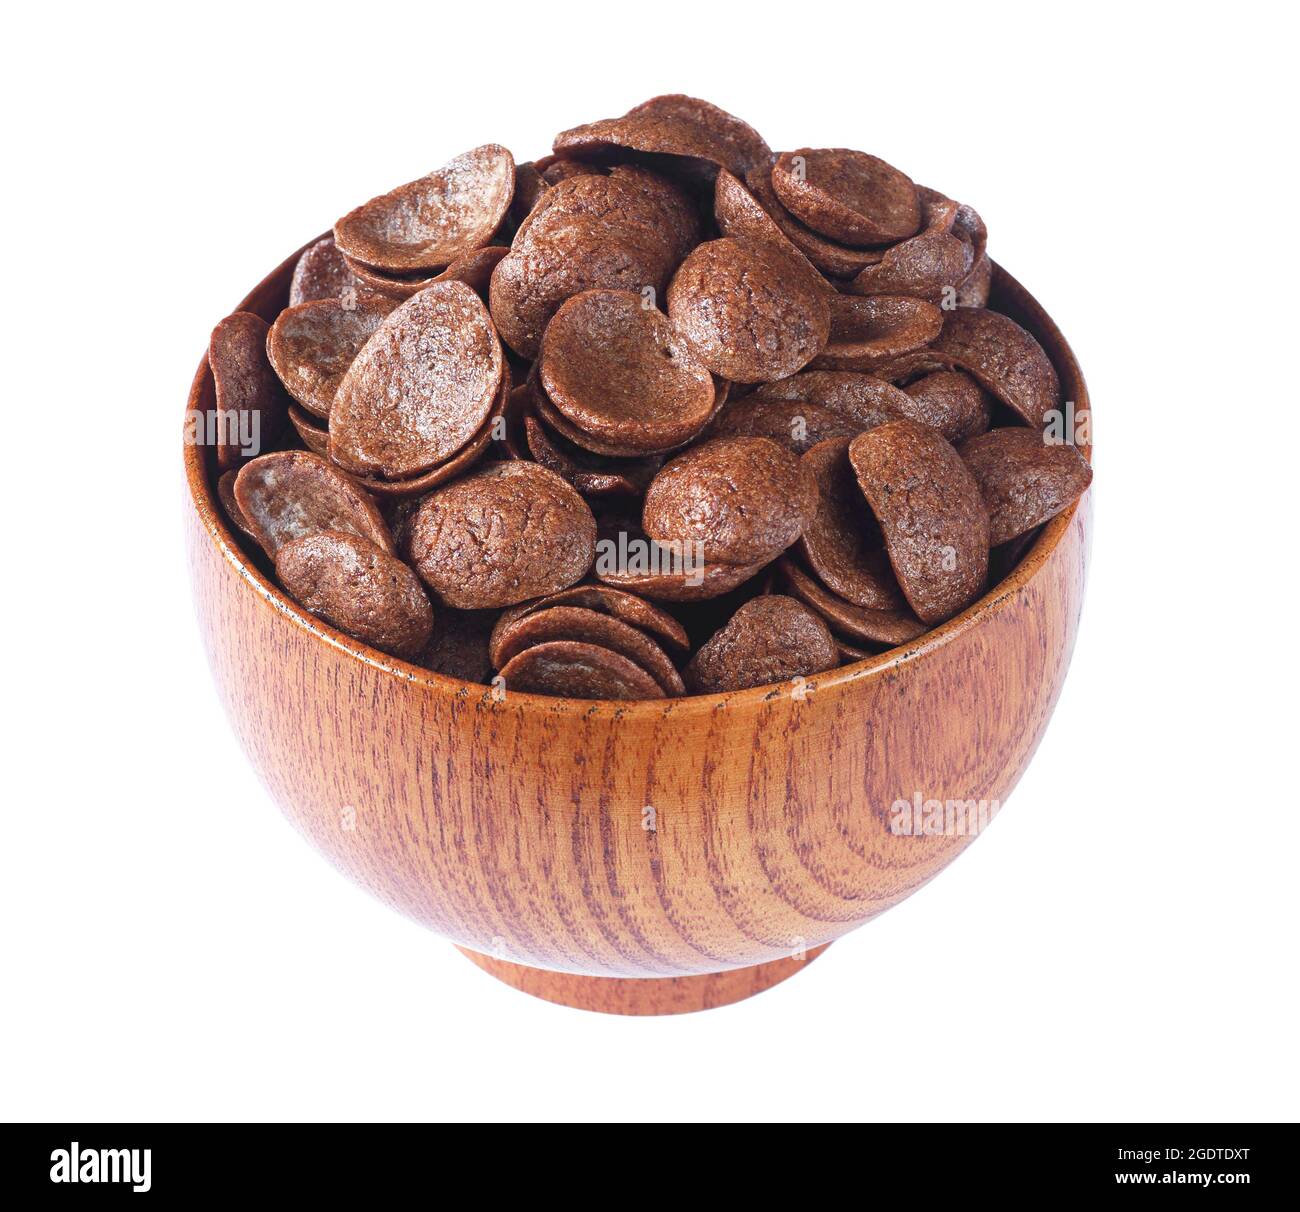 Cereales de chocolate en tazón de madera marrón aislados sobre fondo blanco Foto de stock